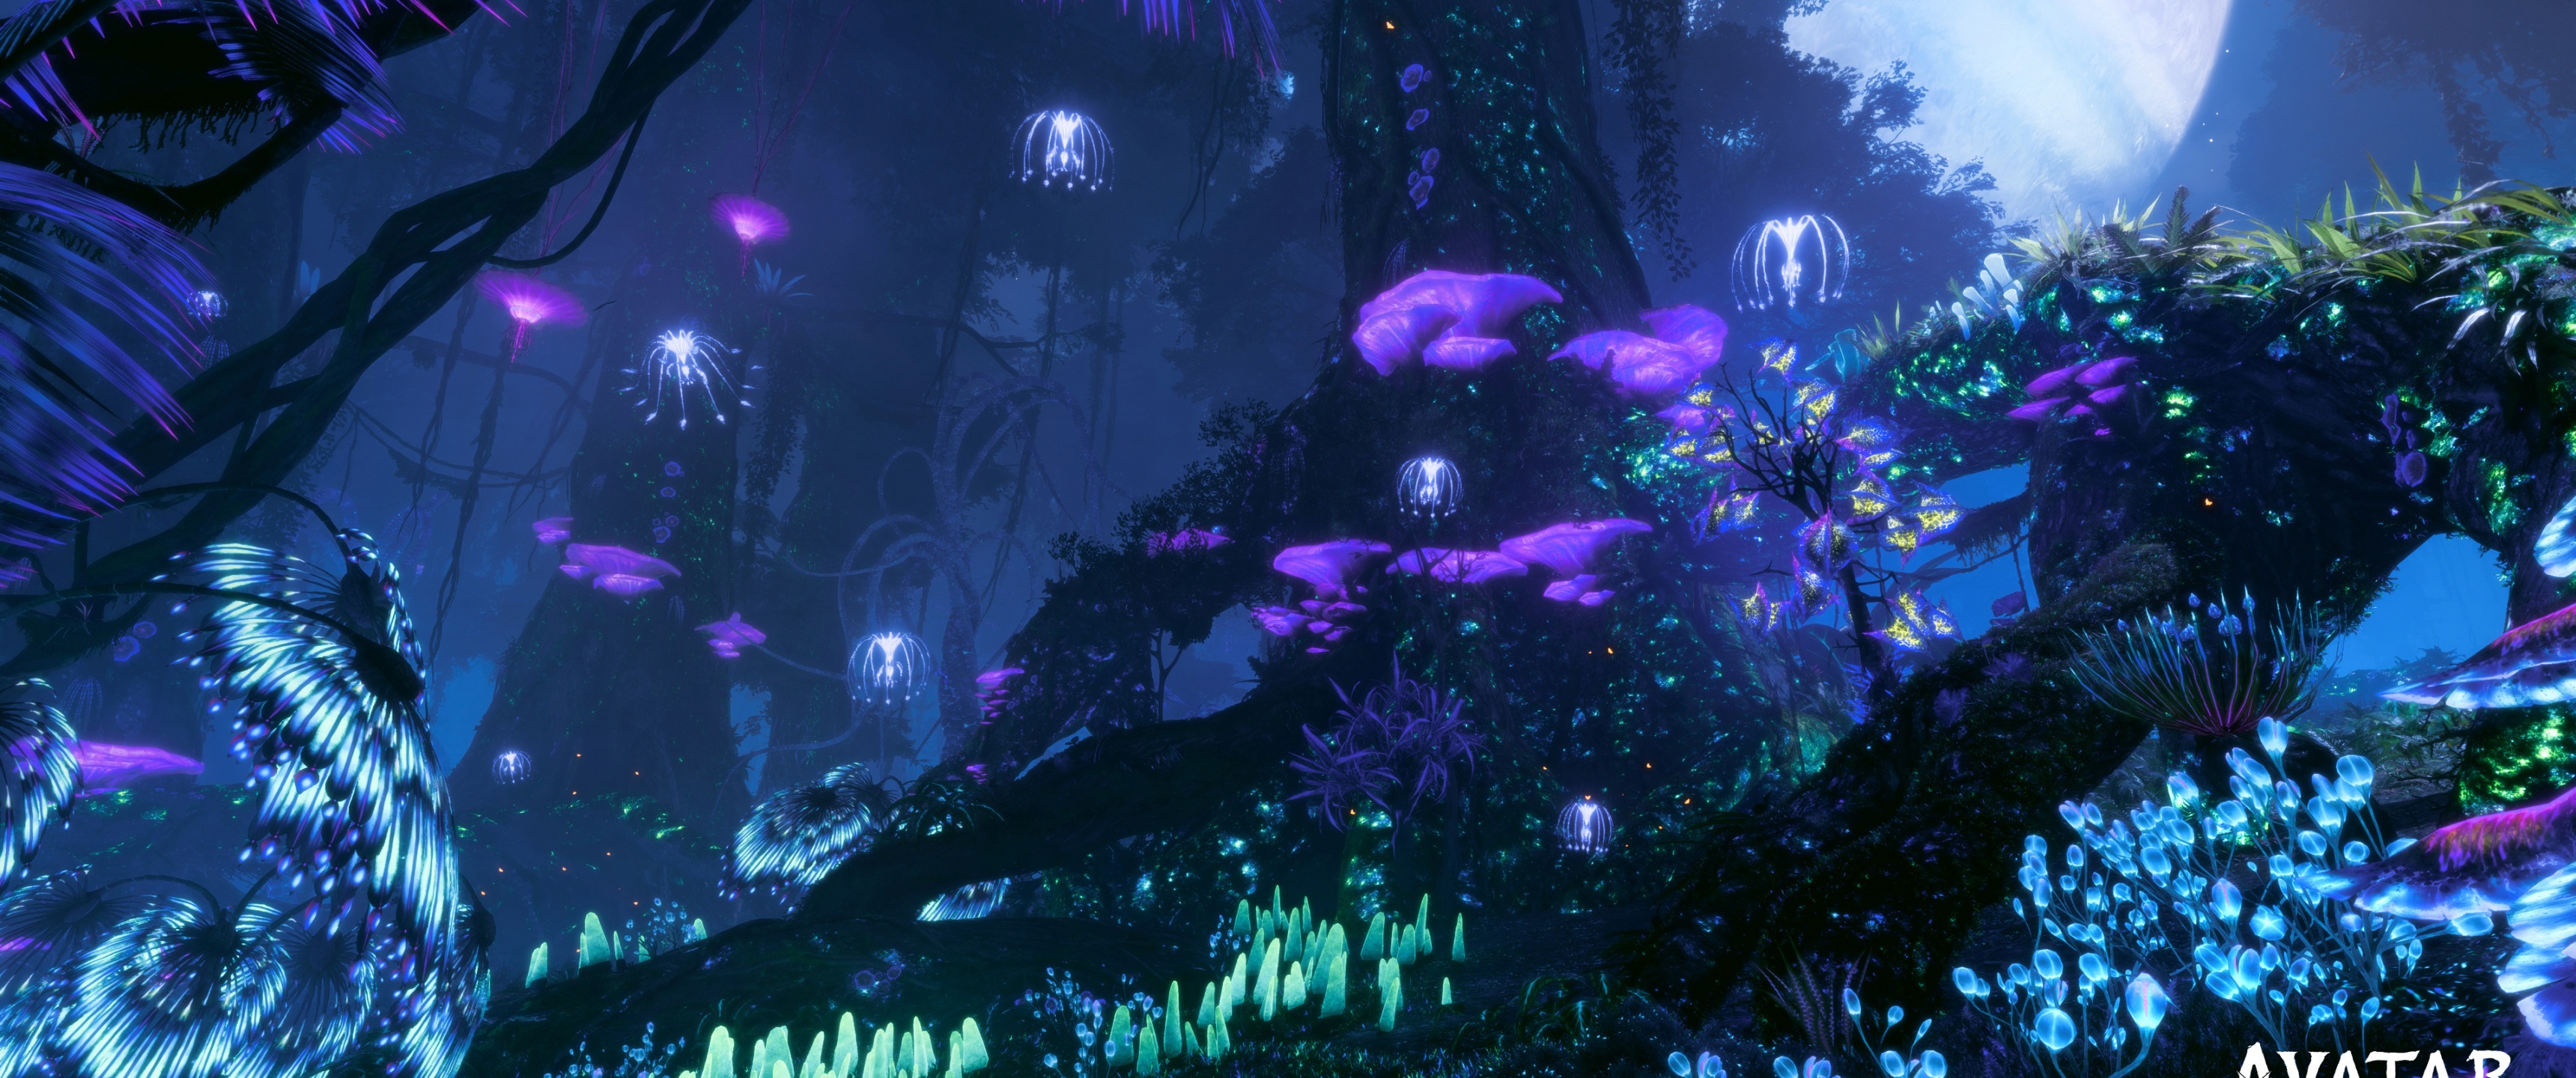 Avatar: Frontiers of Pandora Wallpaper 4K, 2022 Games, Amazon Luna, Games,  #6807